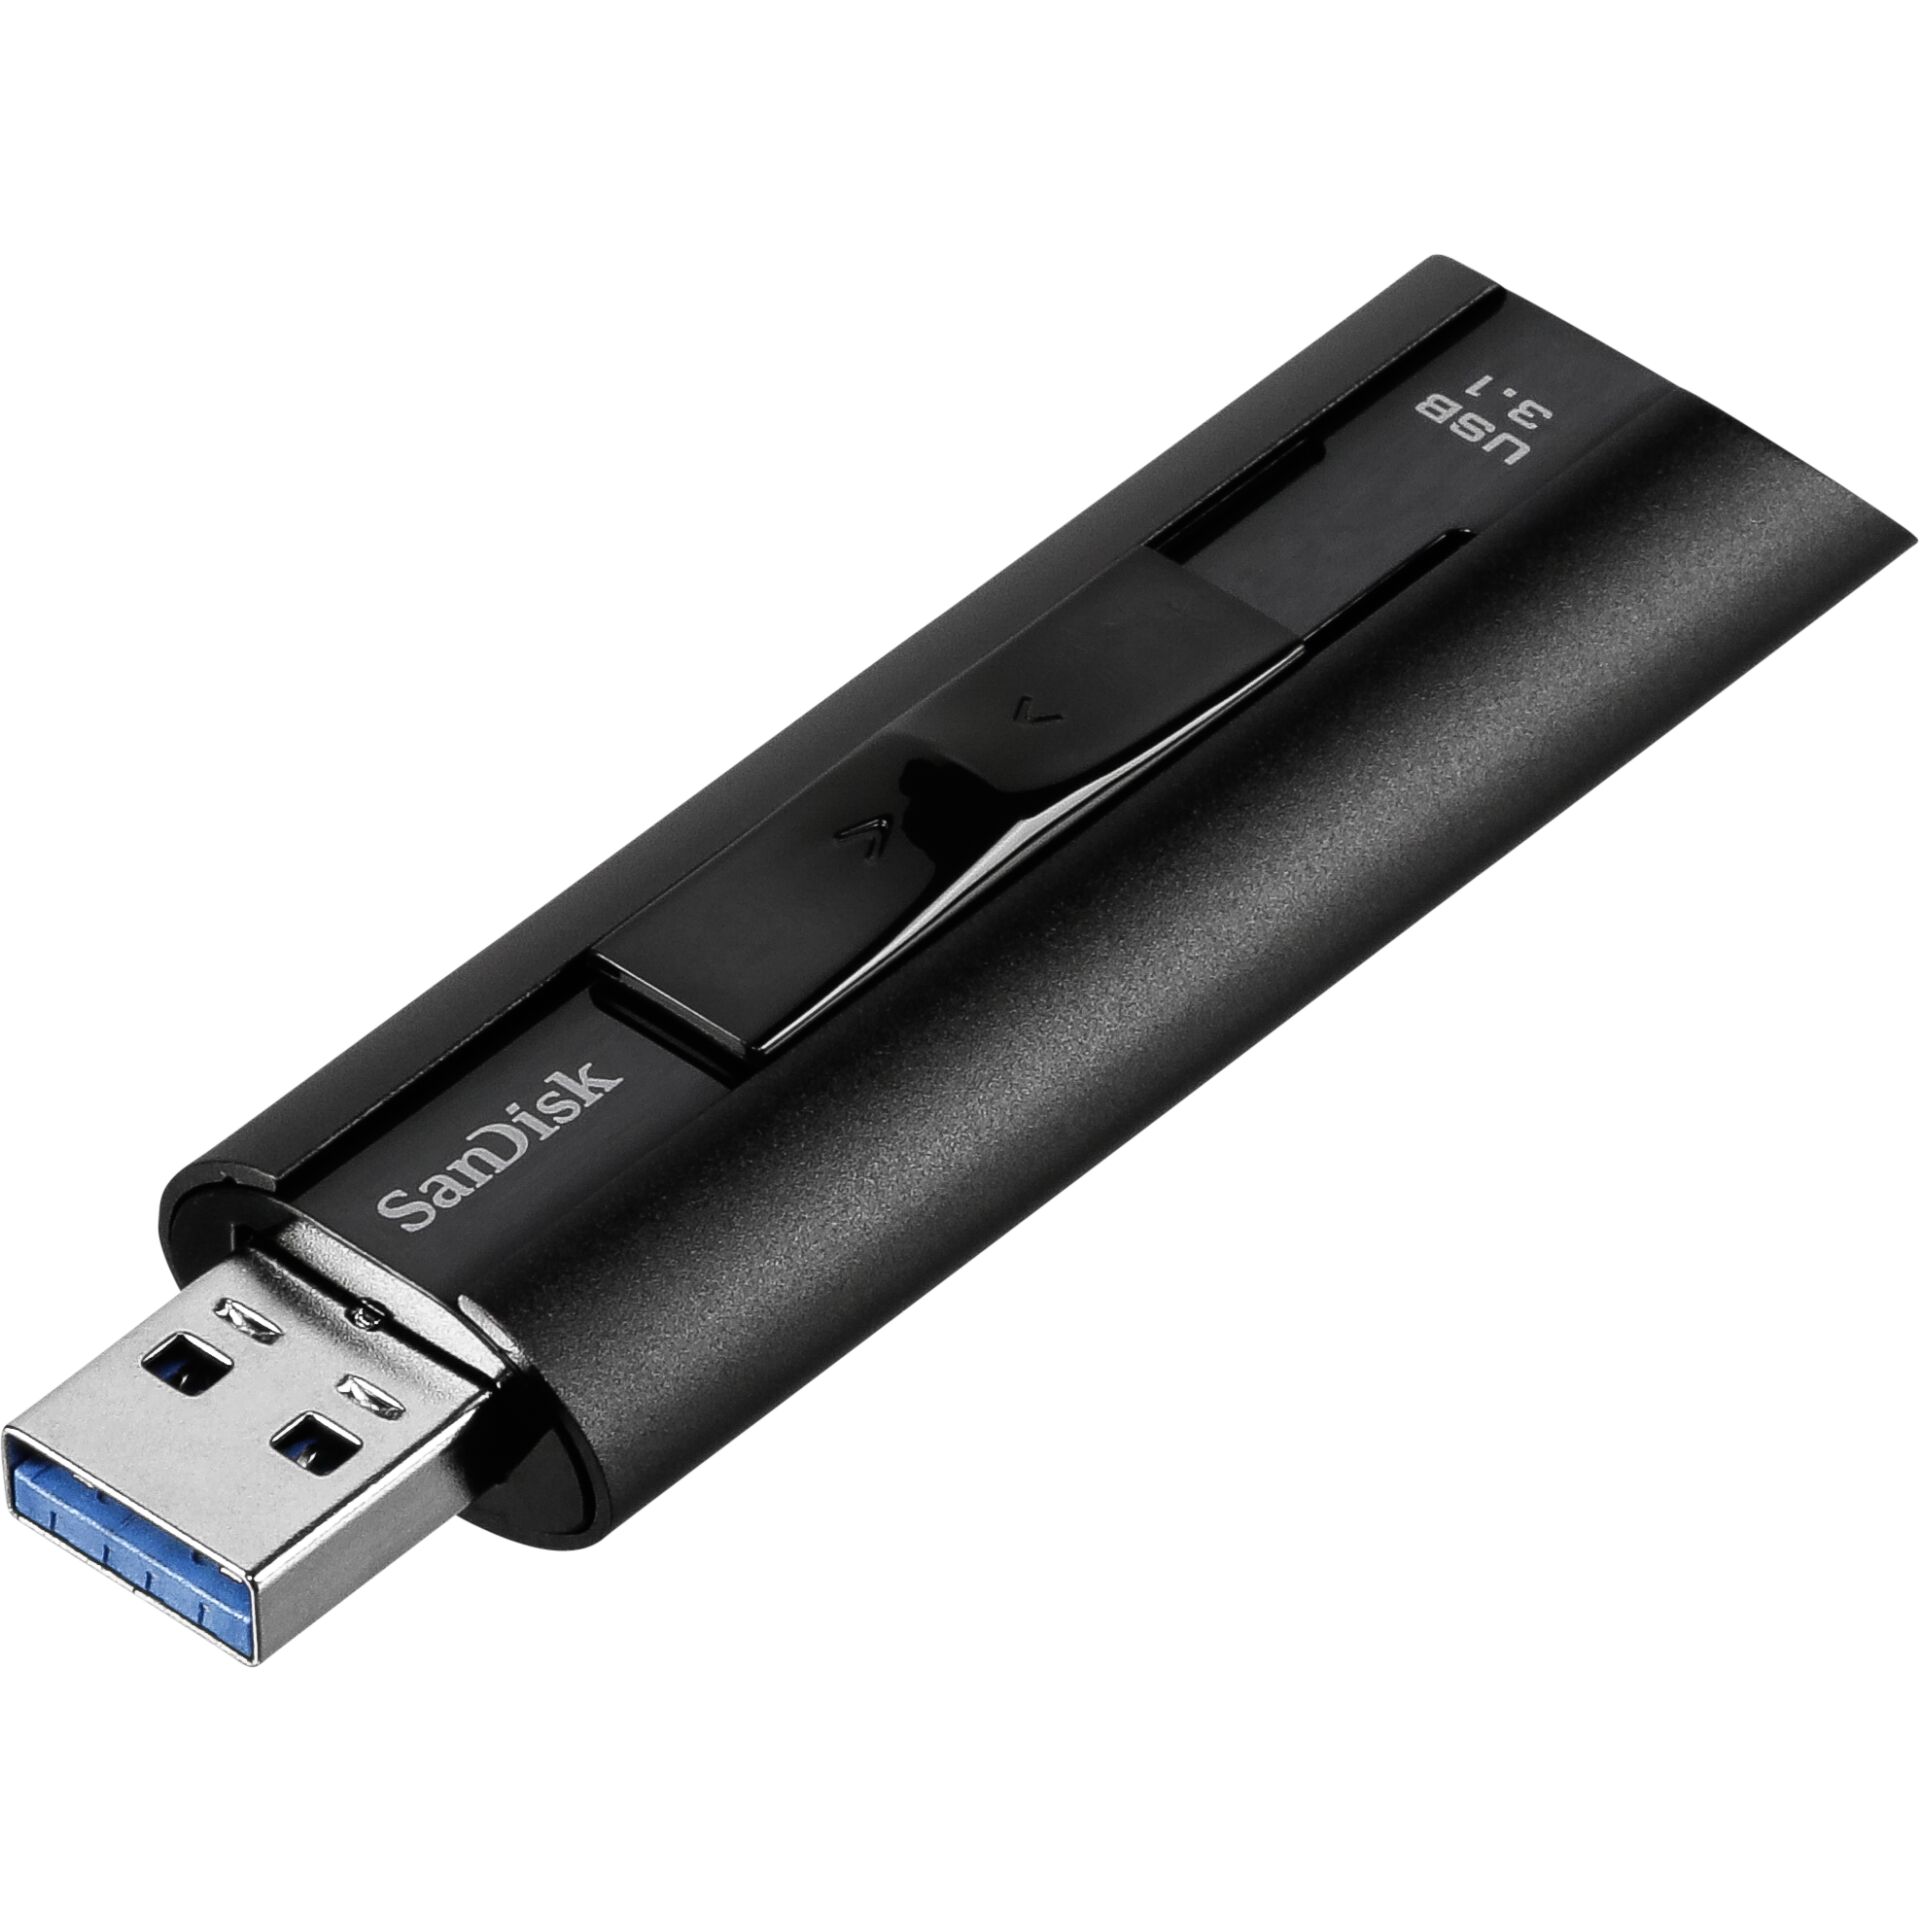 256 GB SanDisk Extreme PRO USB 3.1 Stick schwarz lesen: 420MB/s, schreiben: 380MB/s